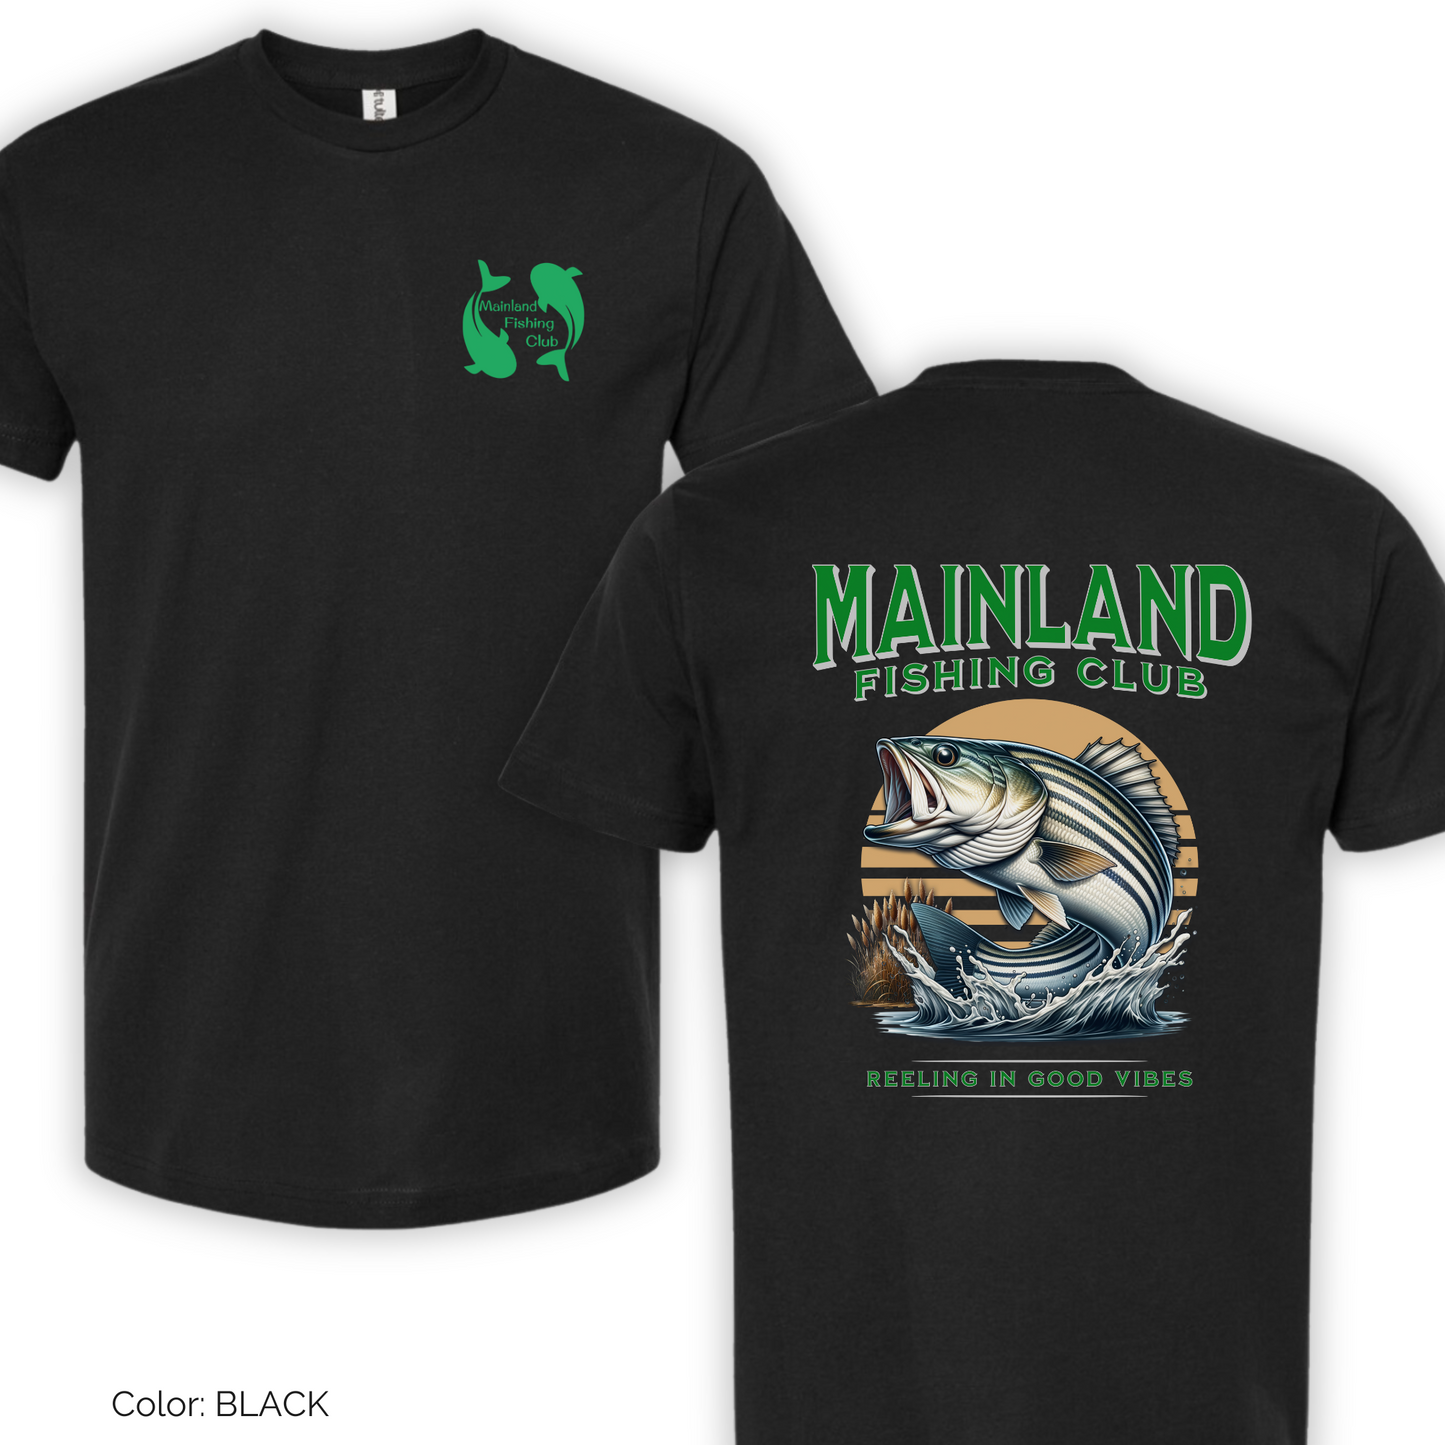 Mainland Fishing Club T-shirt